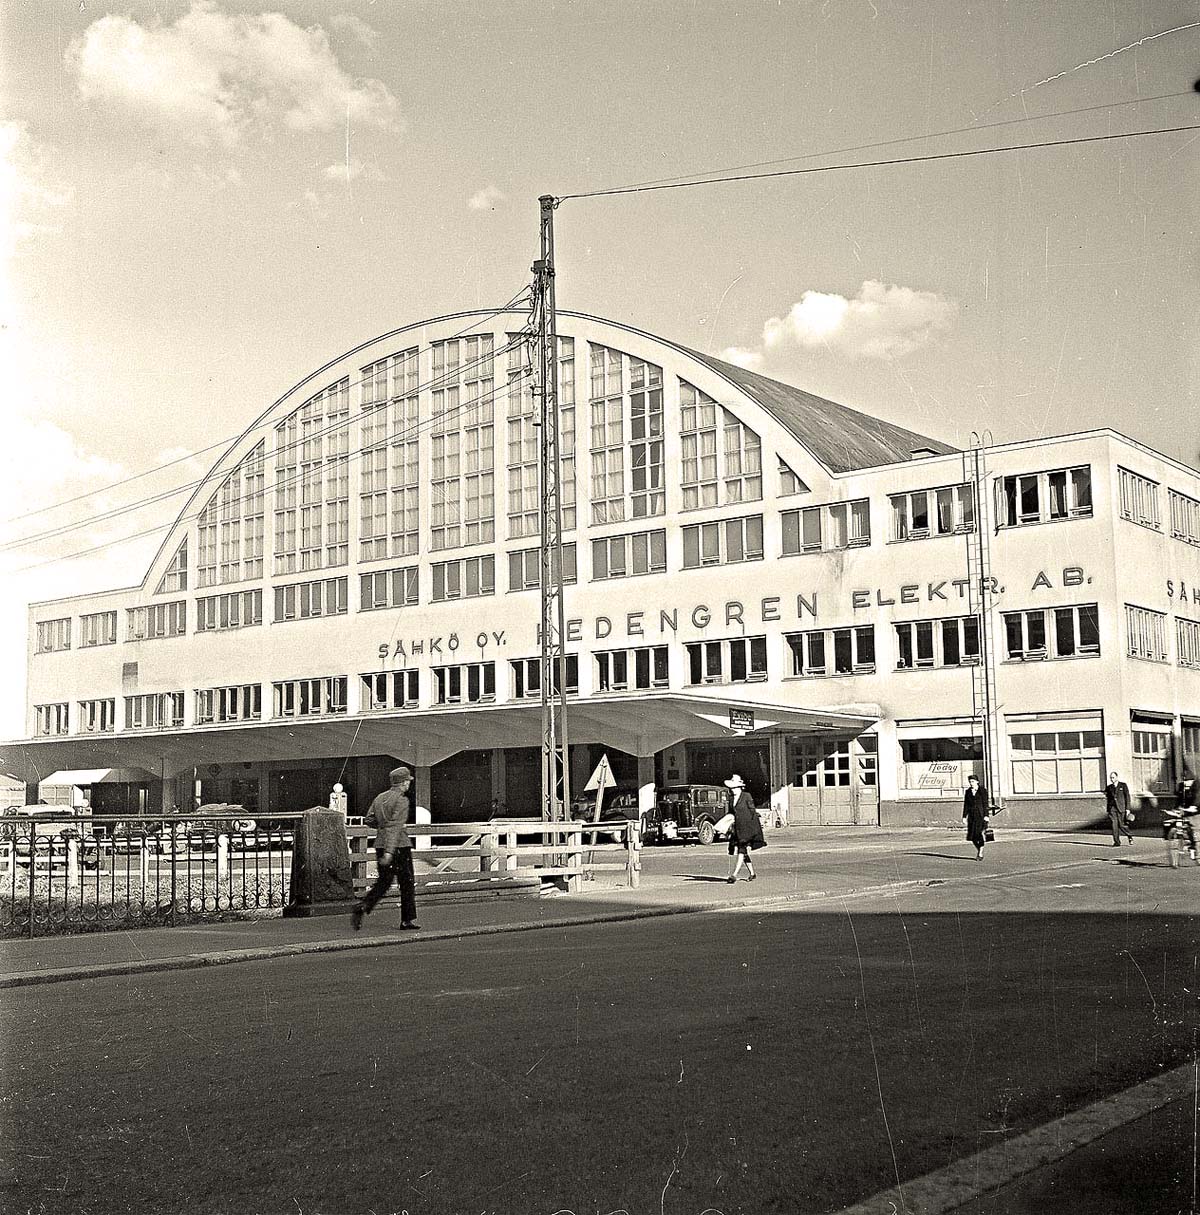 Helsinki (Helsingfors). Bus Station, 1941